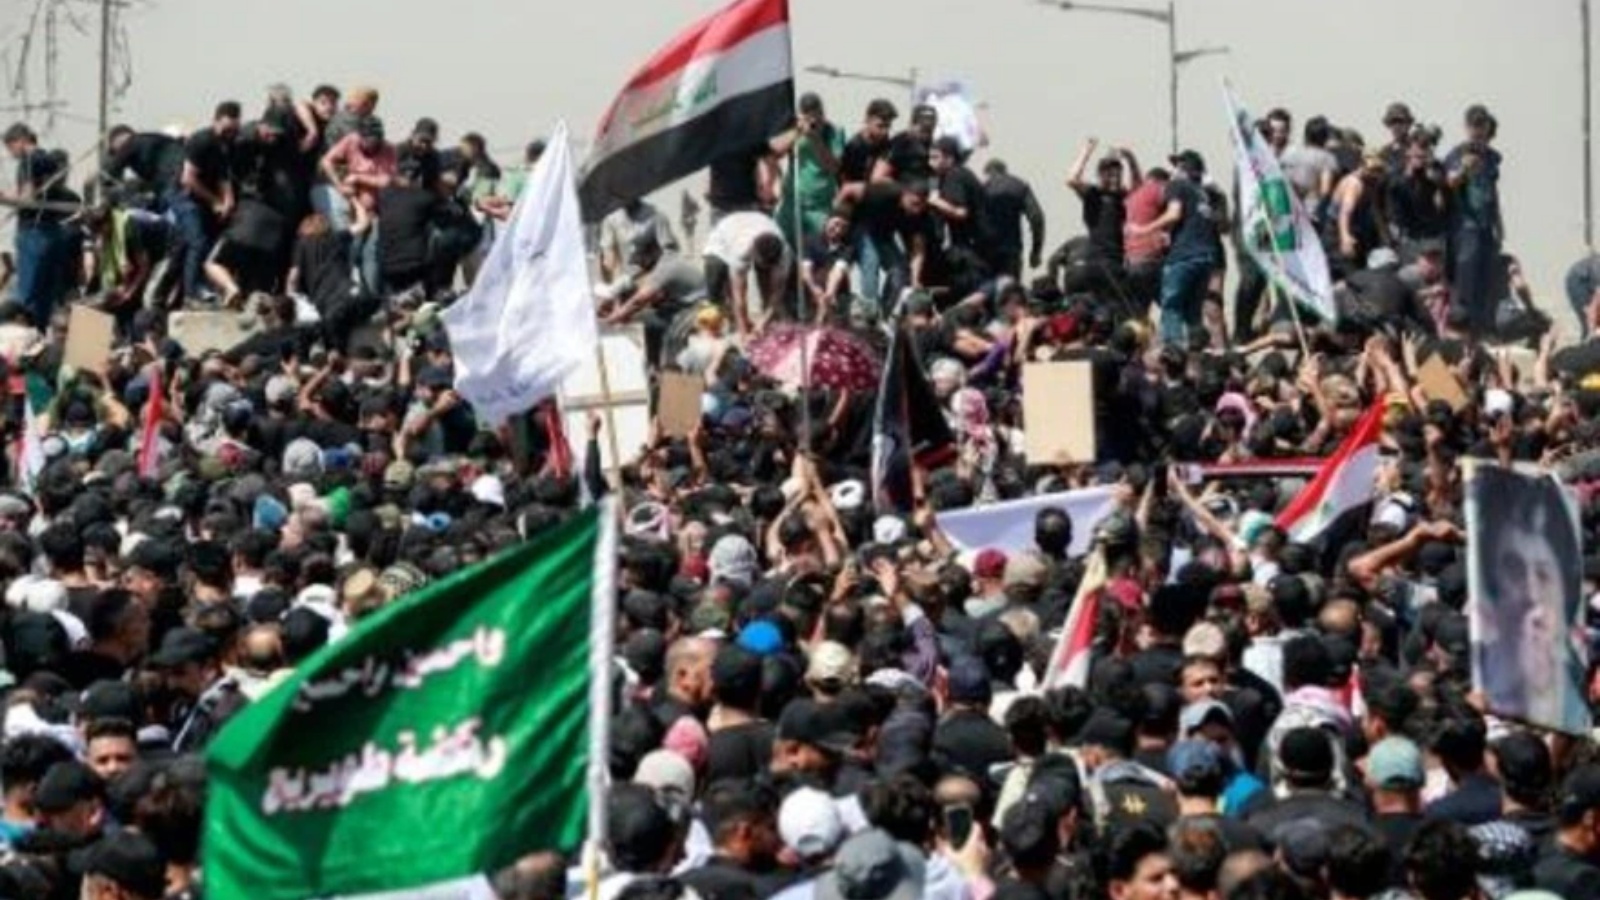 متظاهرون مؤيدون لمقتدى الصدر على جسر الجمهورية المؤدي إلى المنطقة الخضراء في وسط بغداد بتاريخ 30 يوليو 2022 